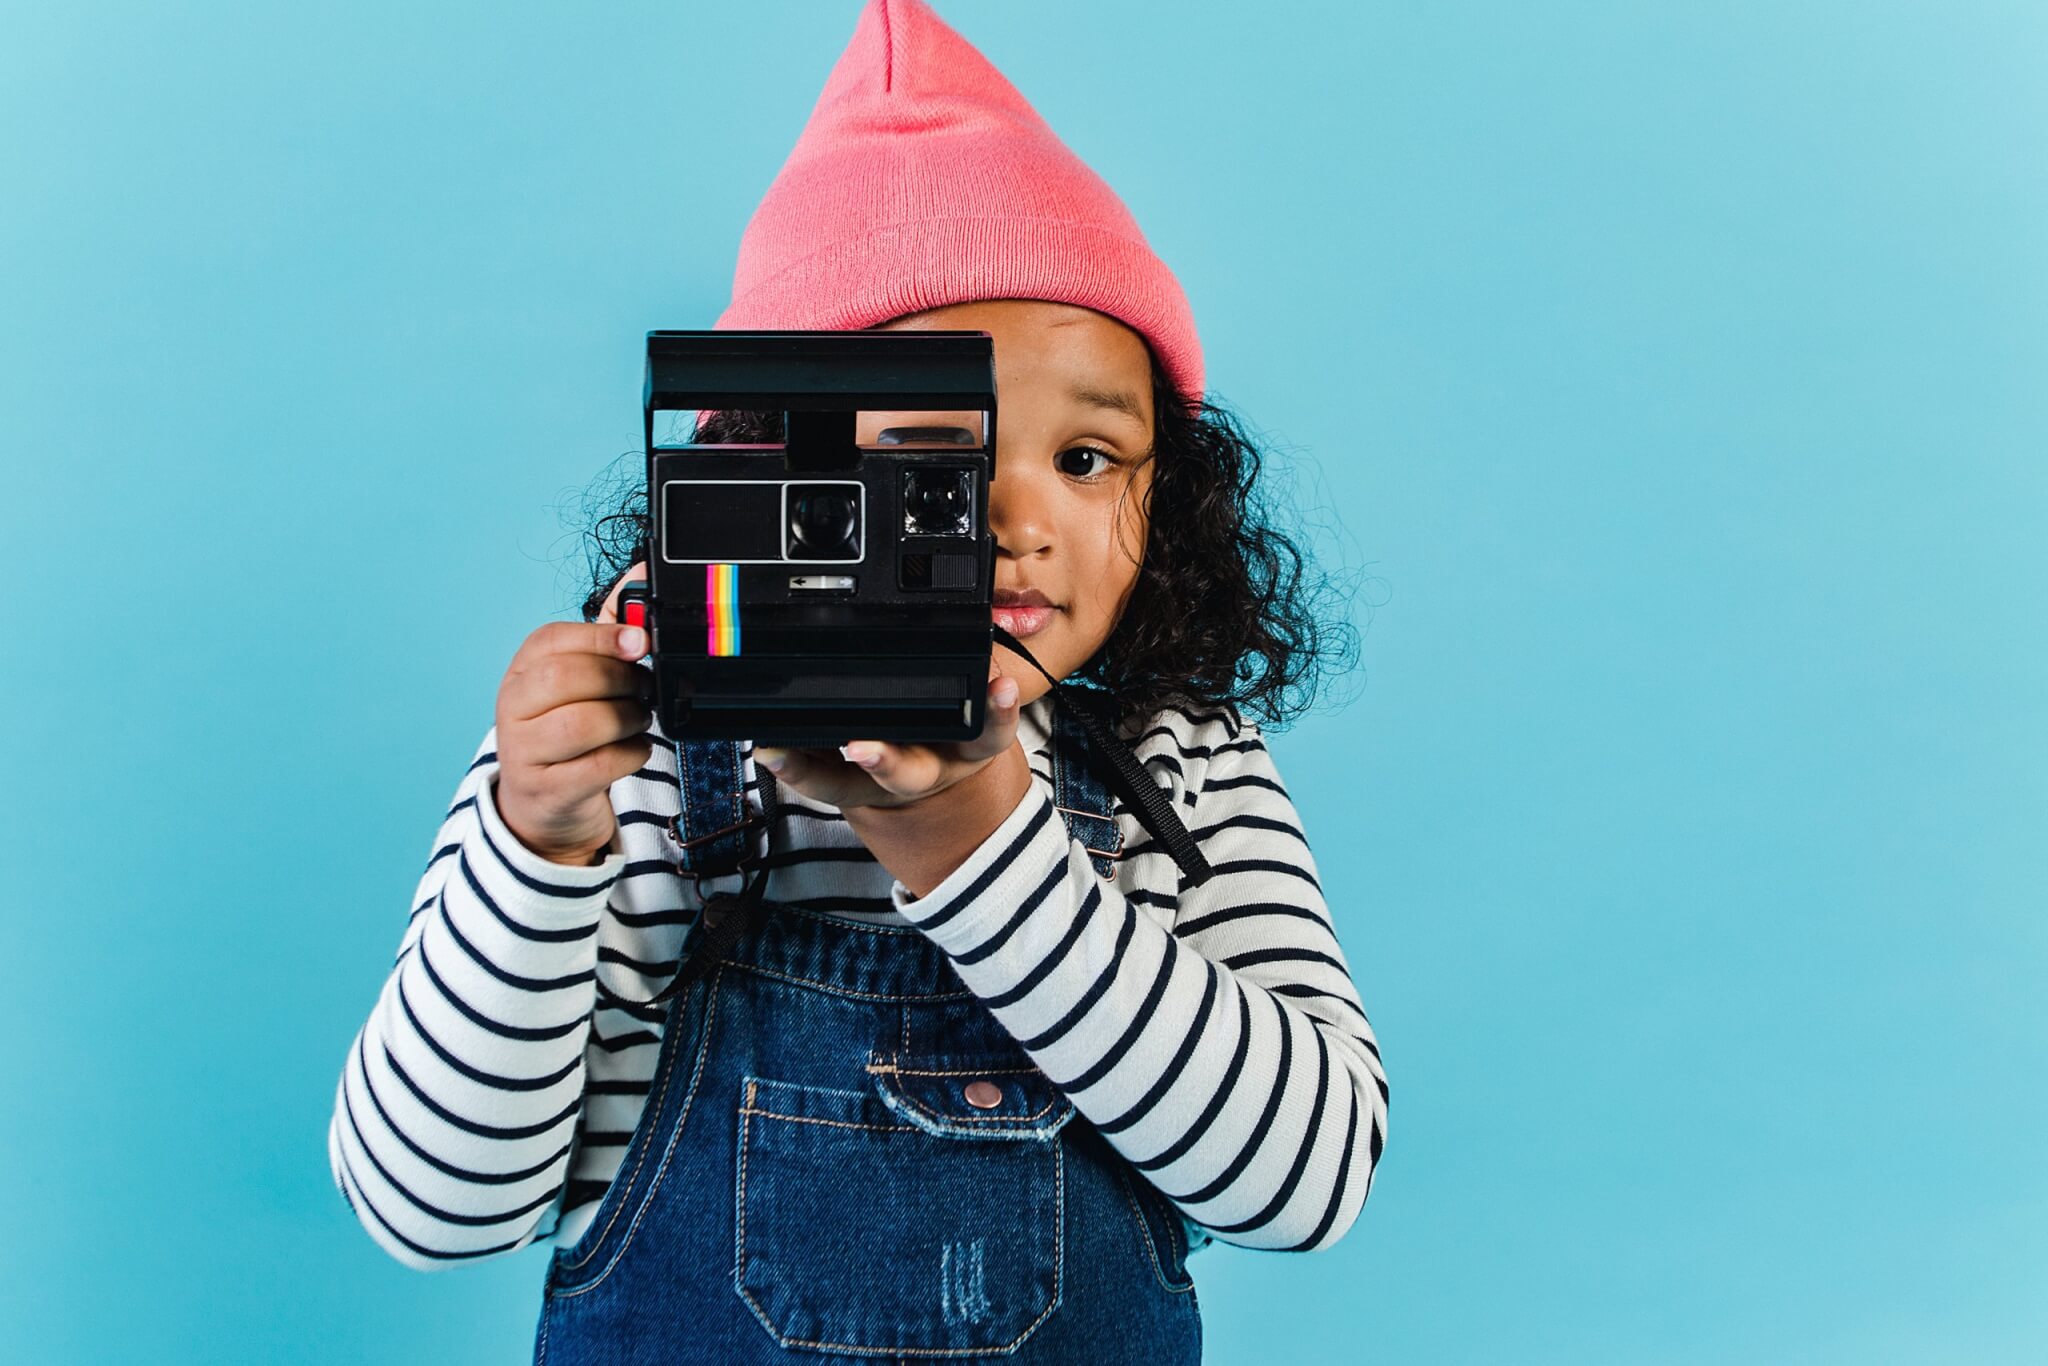 GlobalCrown Appareil Photo pour Enfants,Mini Caméra Numérique